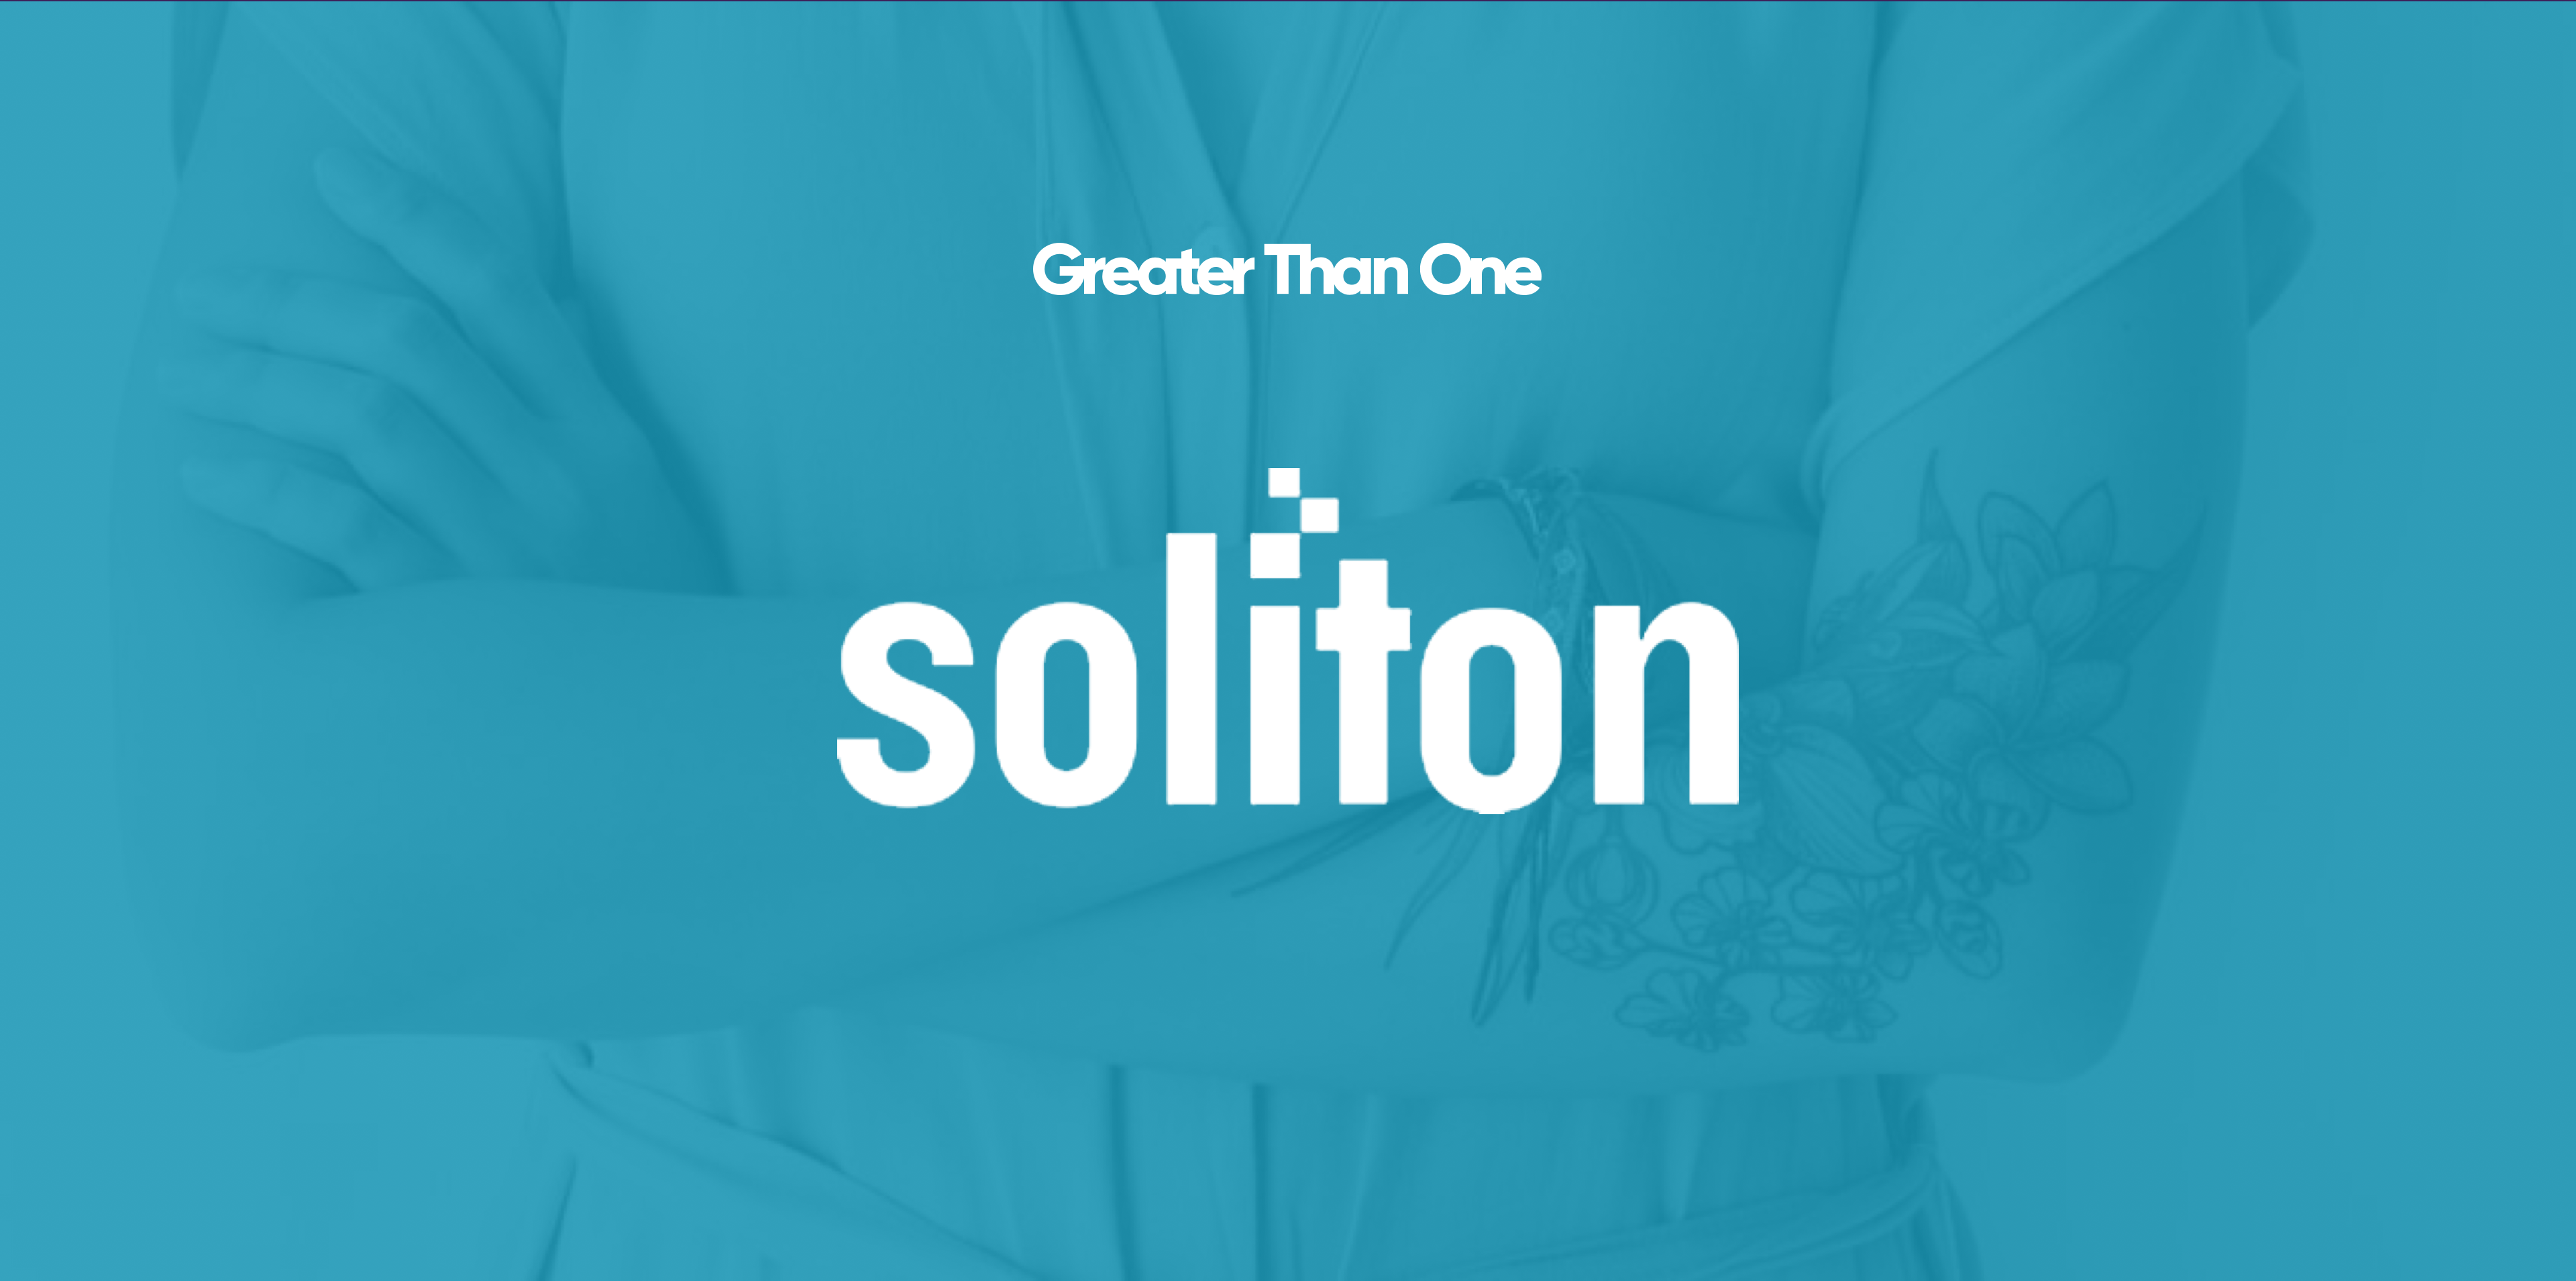 Soliton - GTO Client Case Study